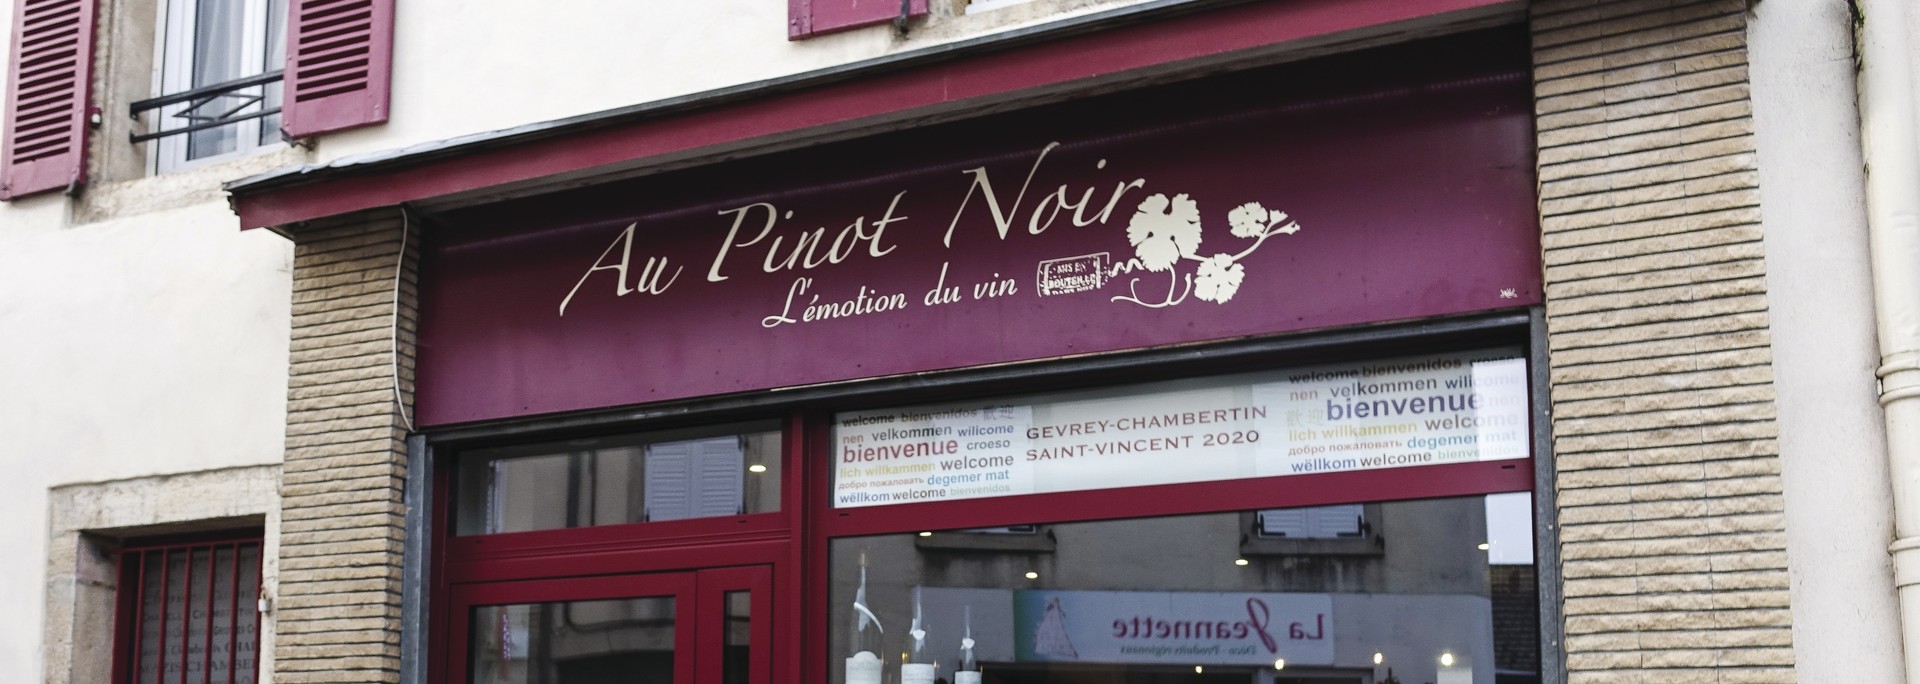 Boutique AU PINOT NOIR - Gevrey Nuits Commerces